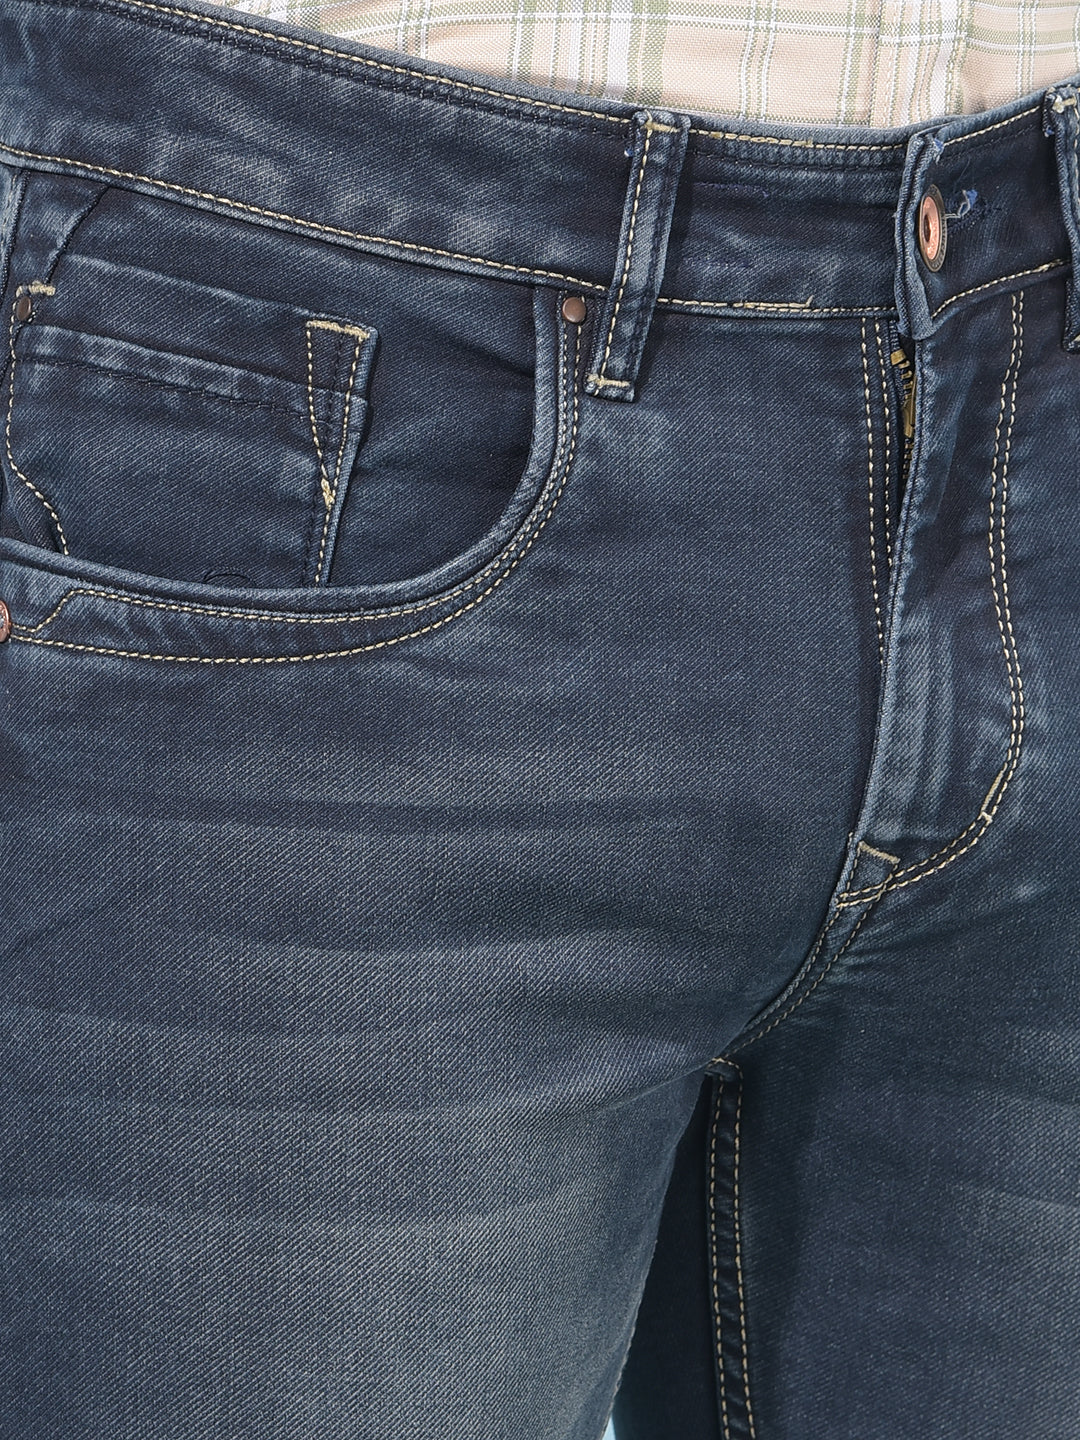 Blue Skinny Cotton Jeans-Men Jeans-Crimsoune Club